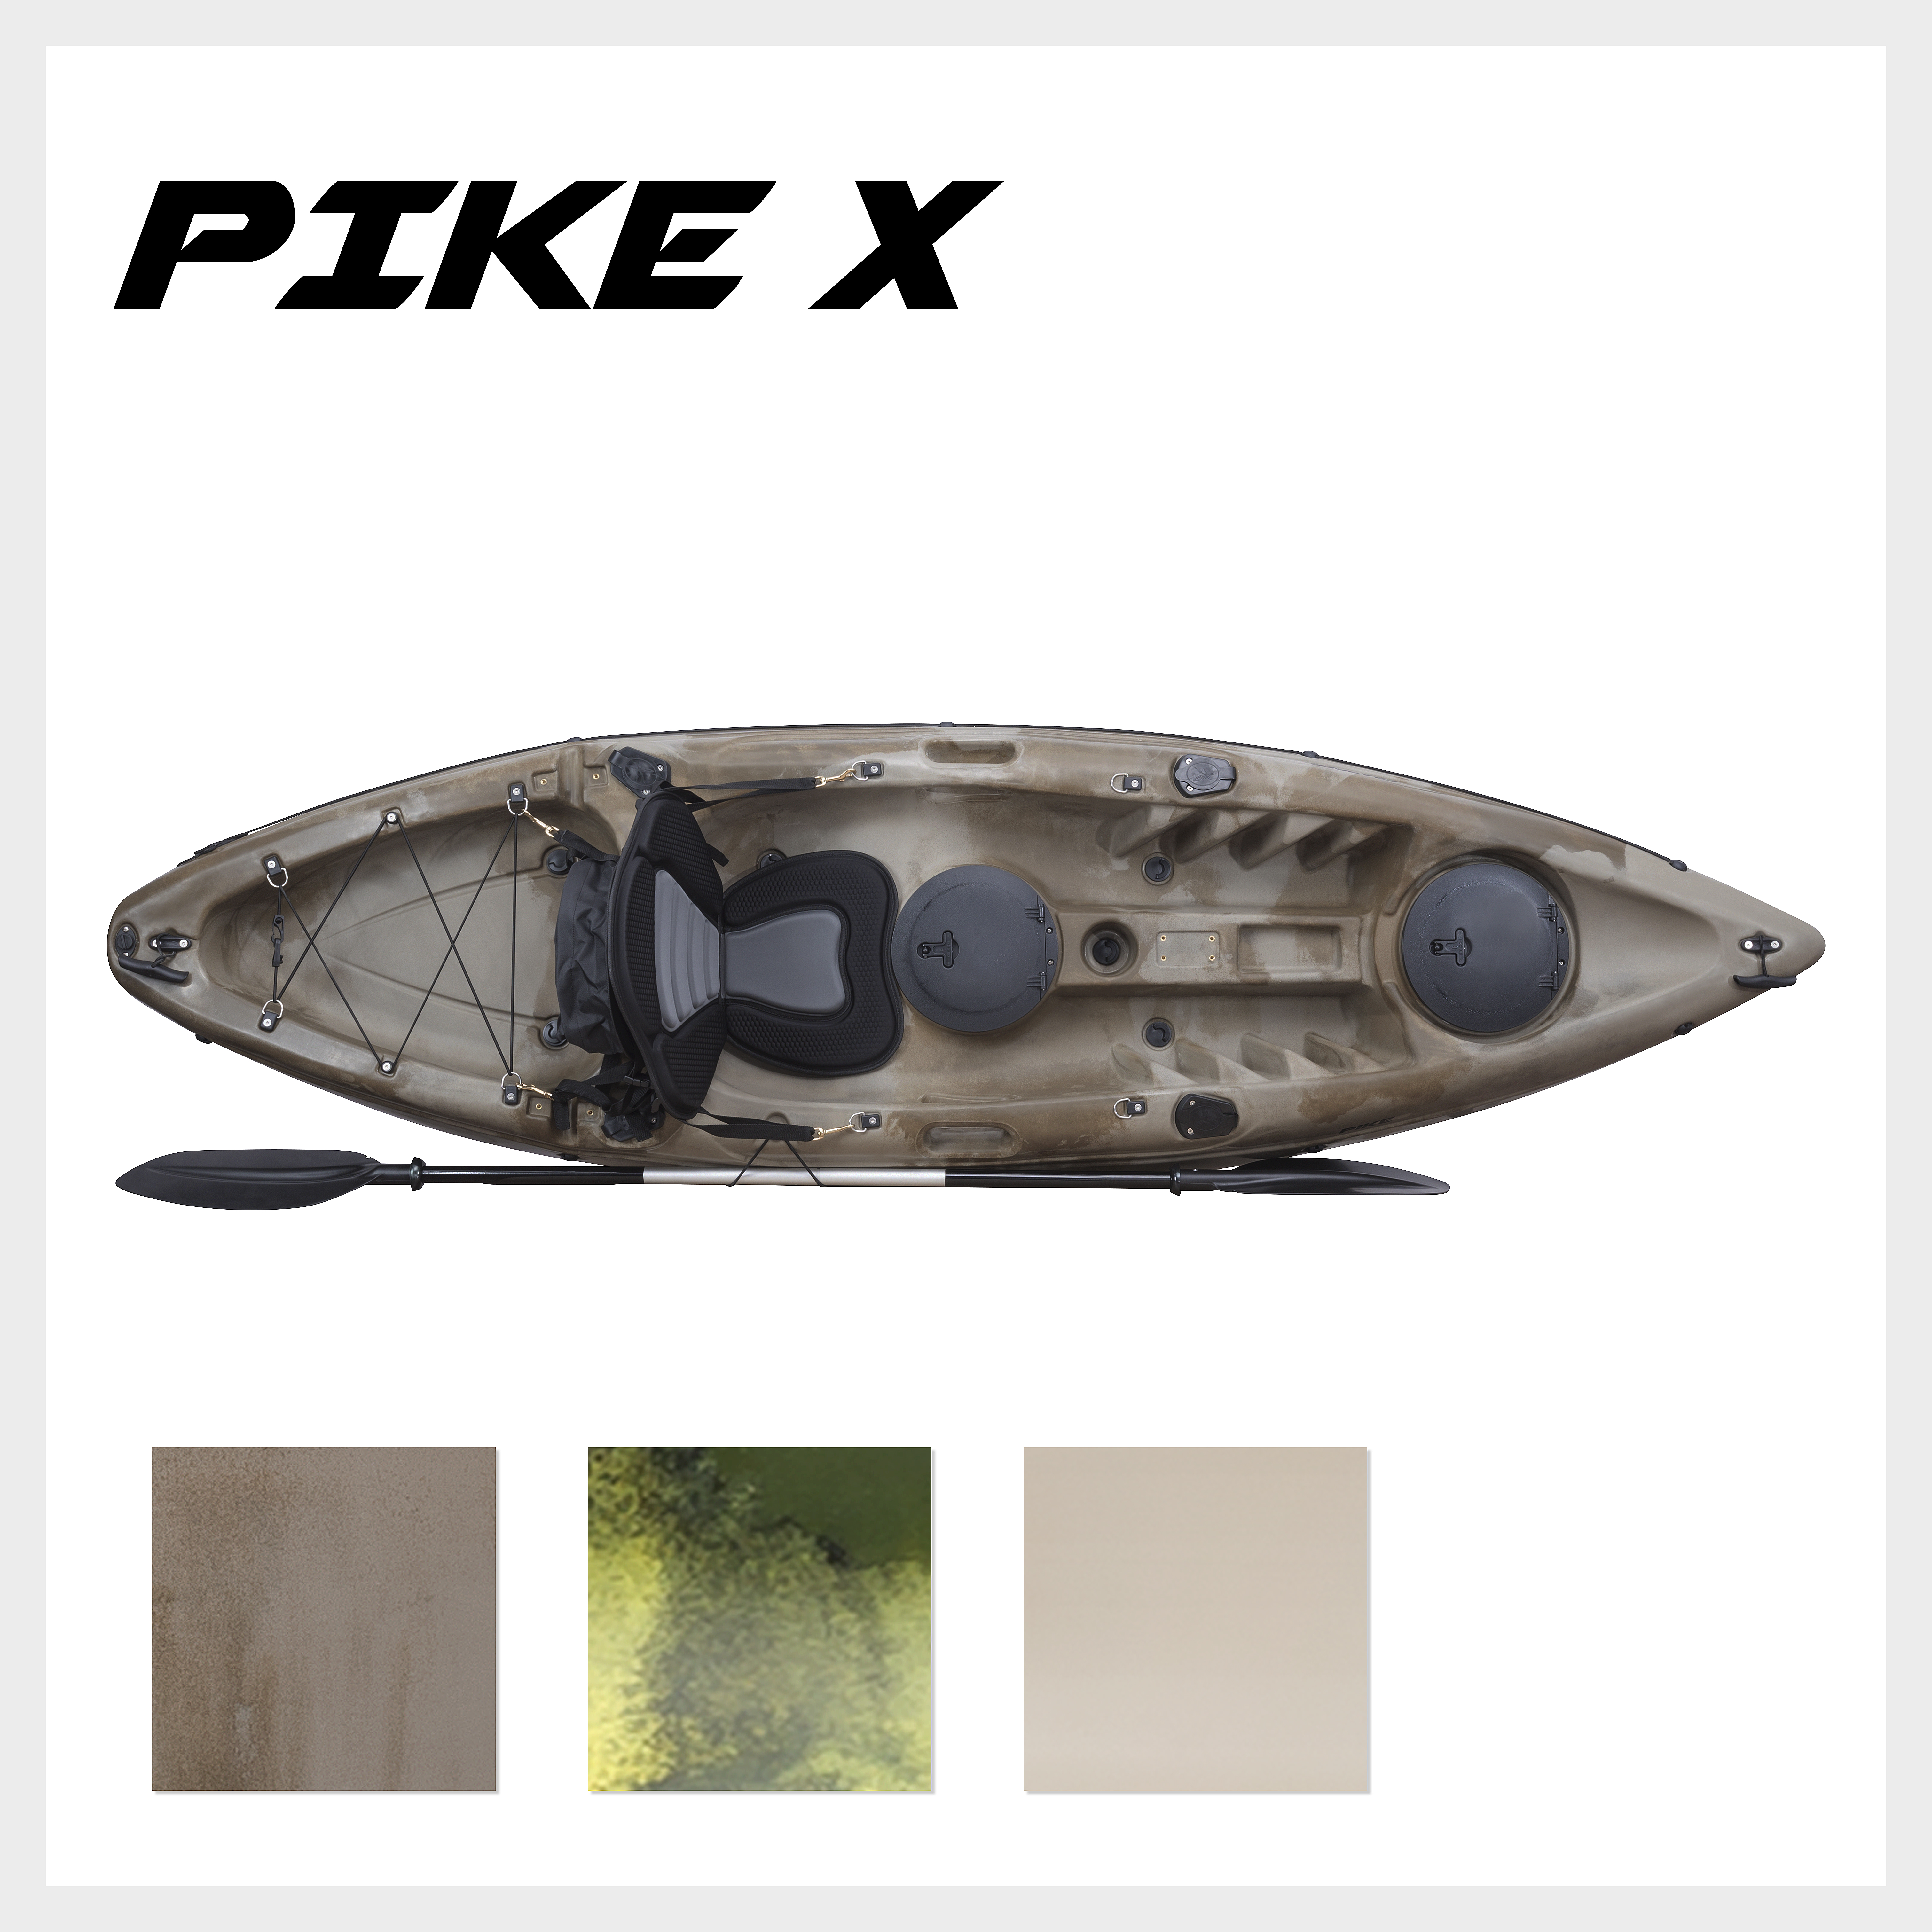 Pike X